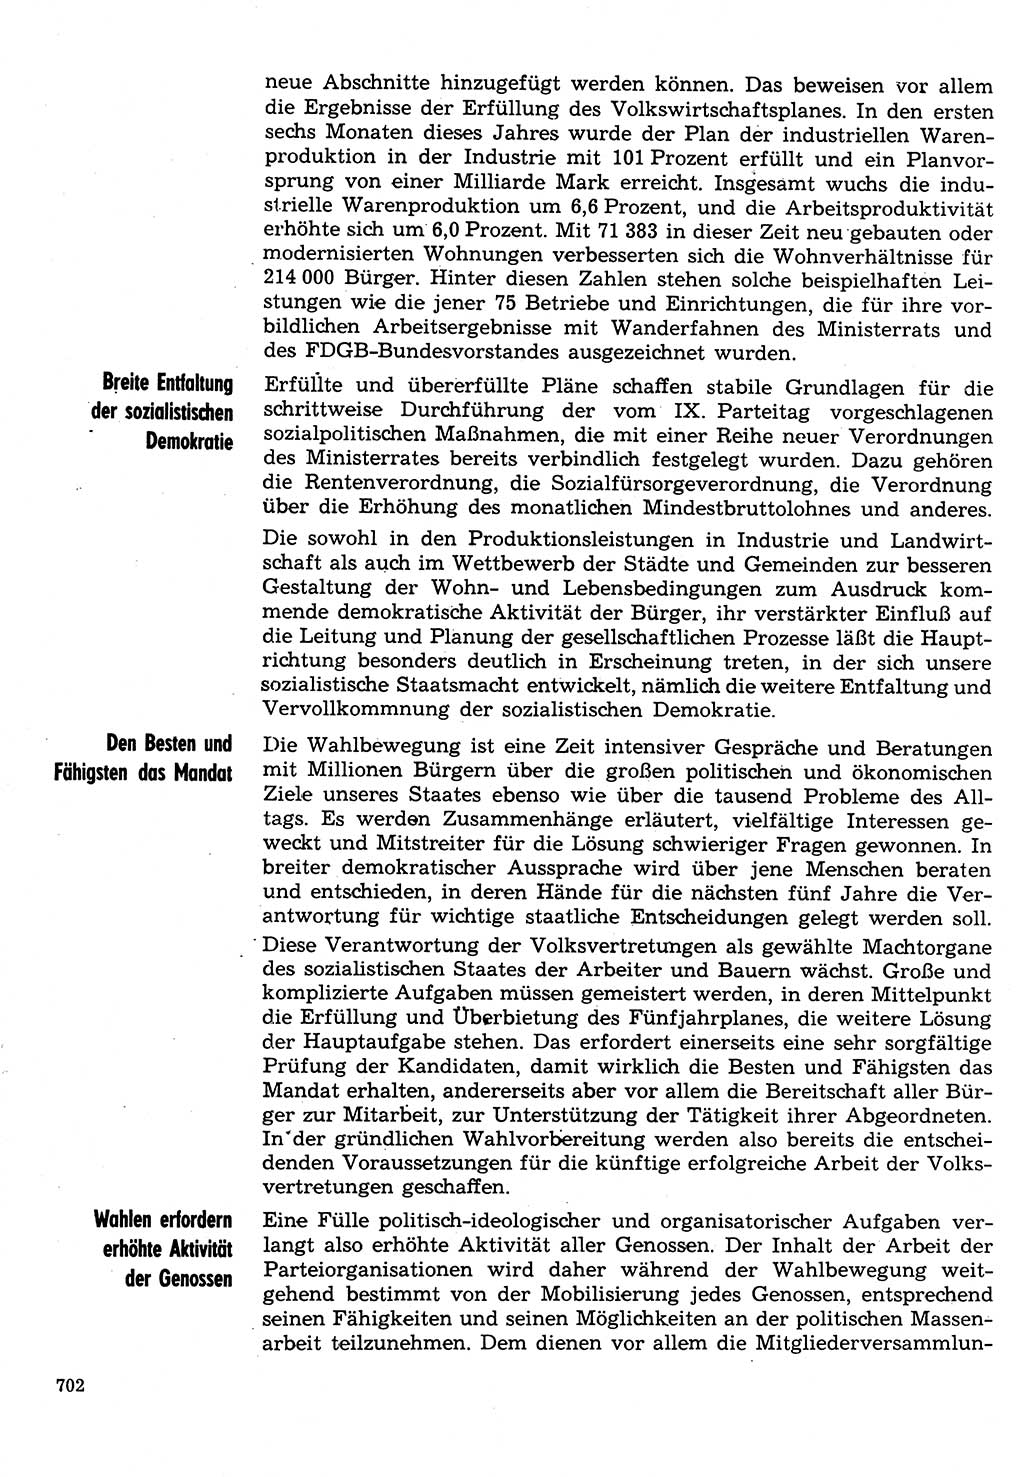 Neuer Weg (NW), Organ des Zentralkomitees (ZK) der SED (Sozialistische Einheitspartei Deutschlands) für Fragen des Parteilebens, 31. Jahrgang [Deutsche Demokratische Republik (DDR)] 1976, Seite 702 (NW ZK SED DDR 1976, S. 702)